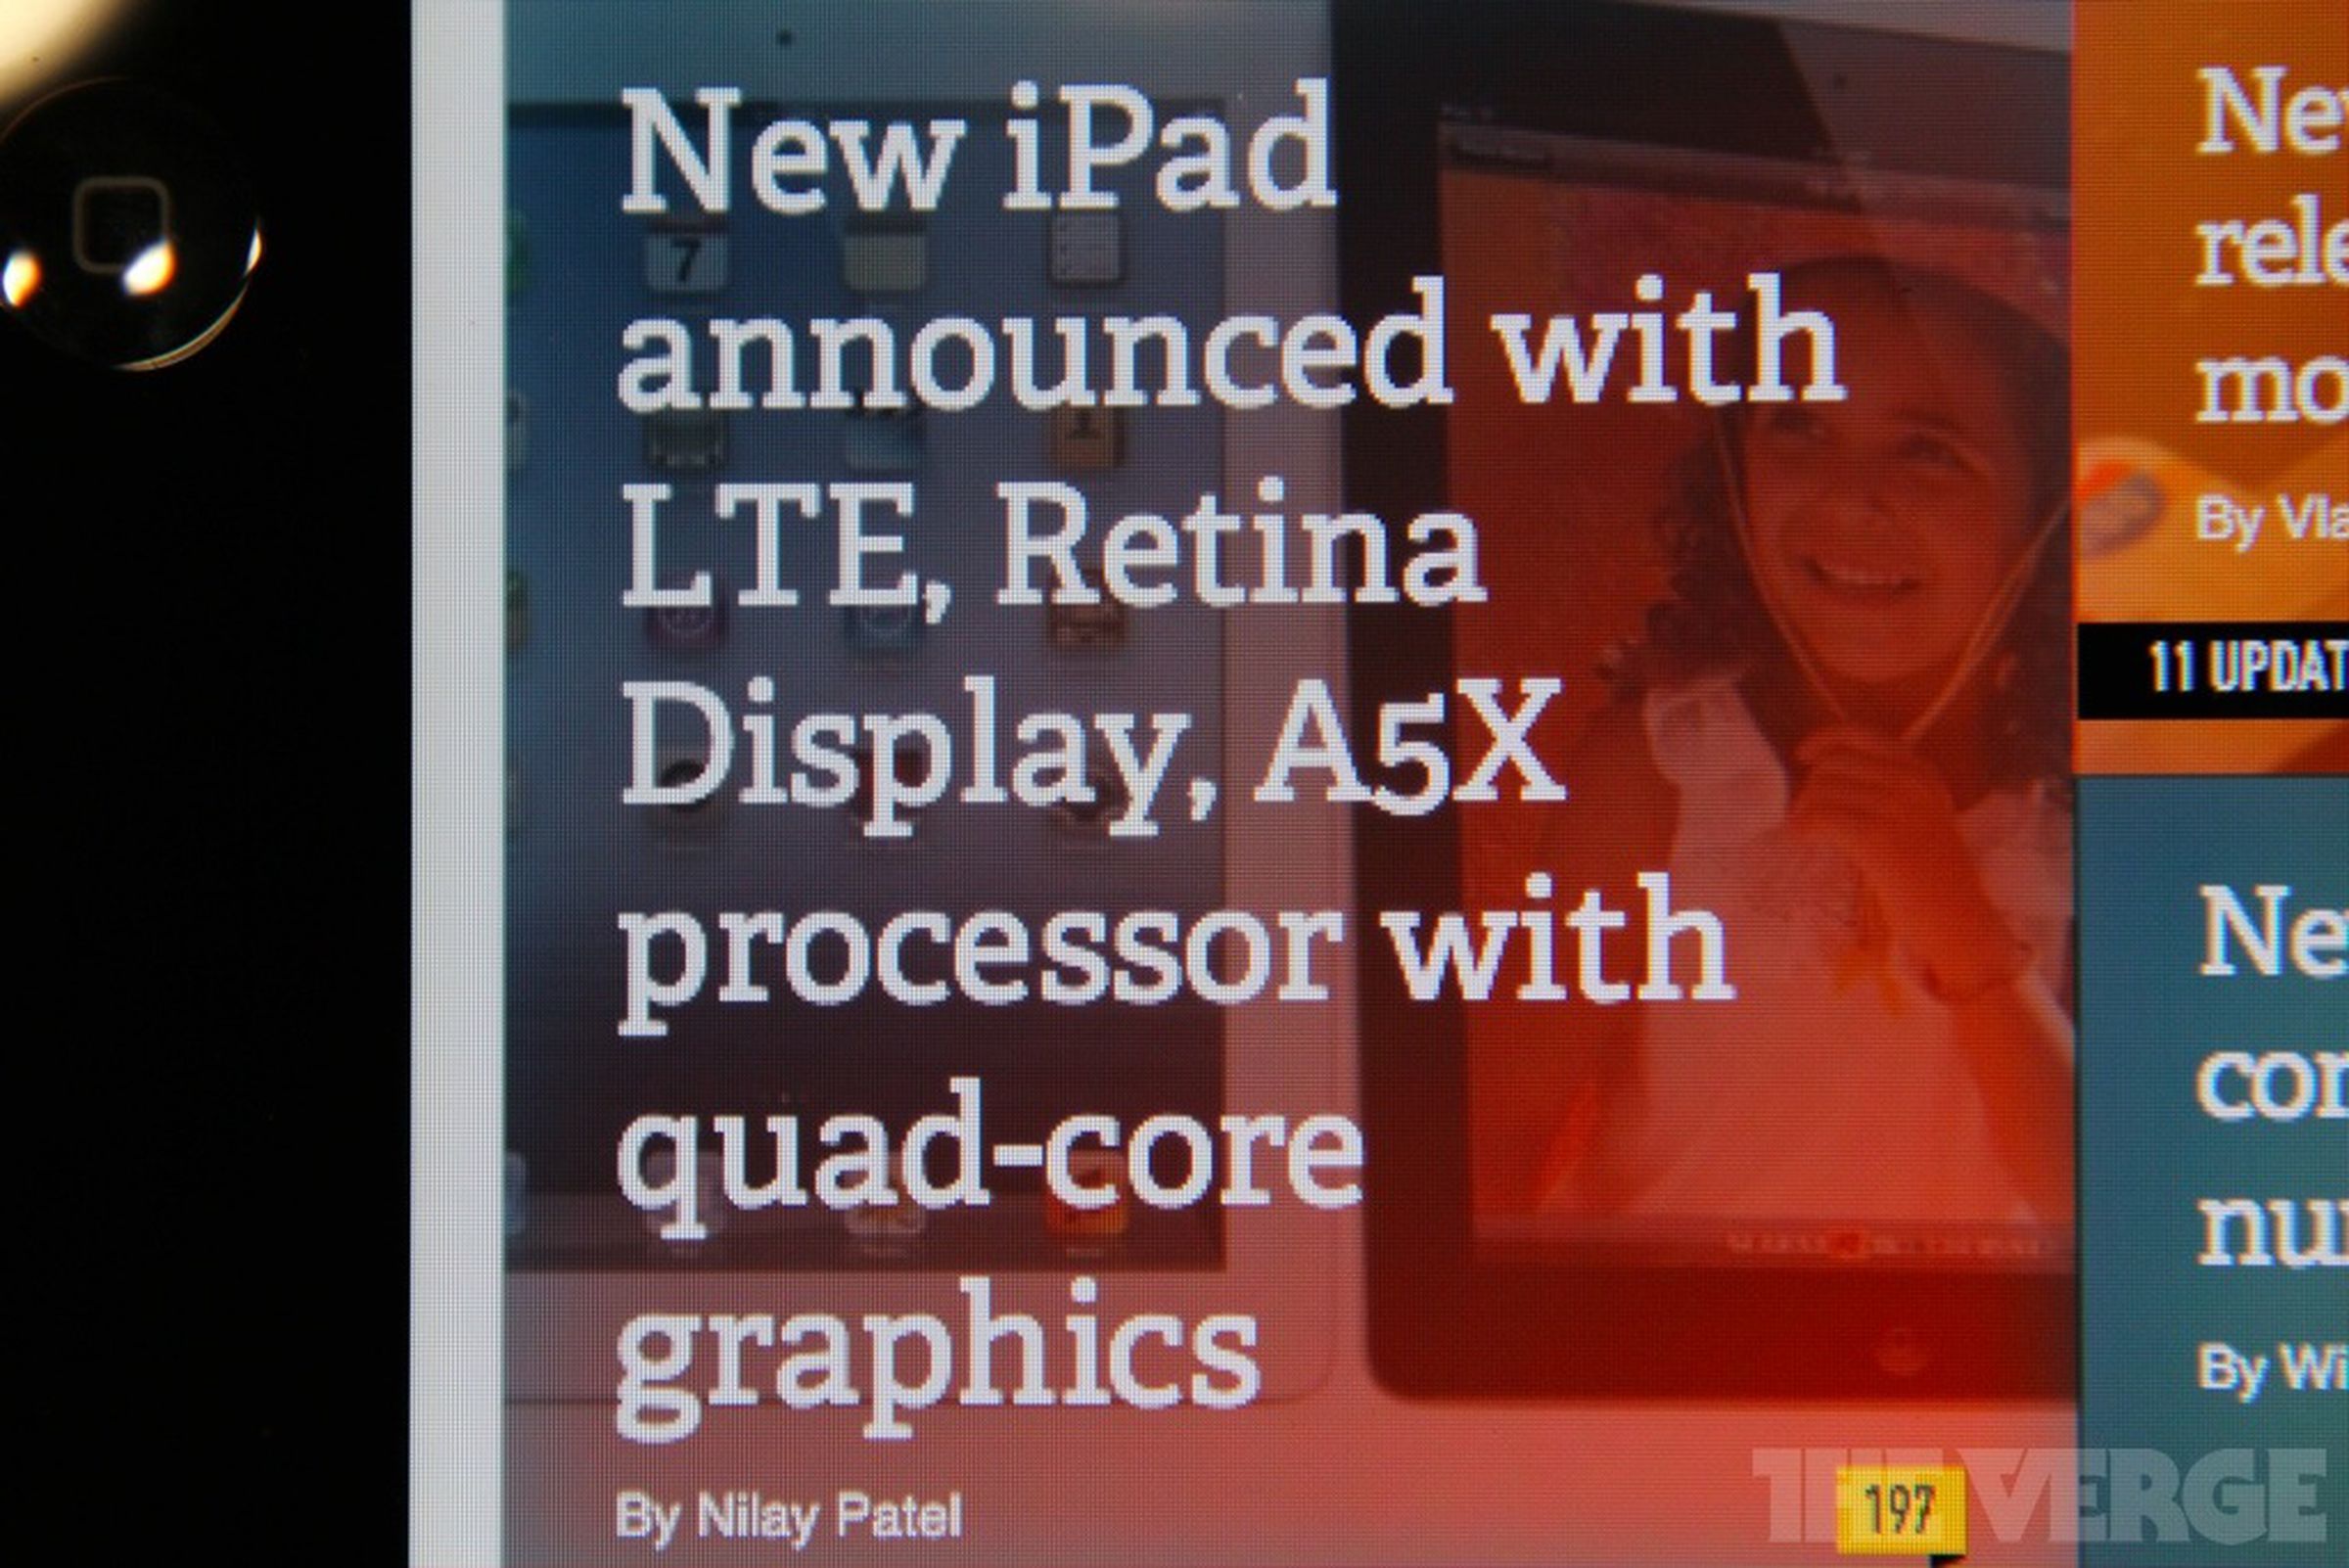 iPad Retina Display hands-on pictures